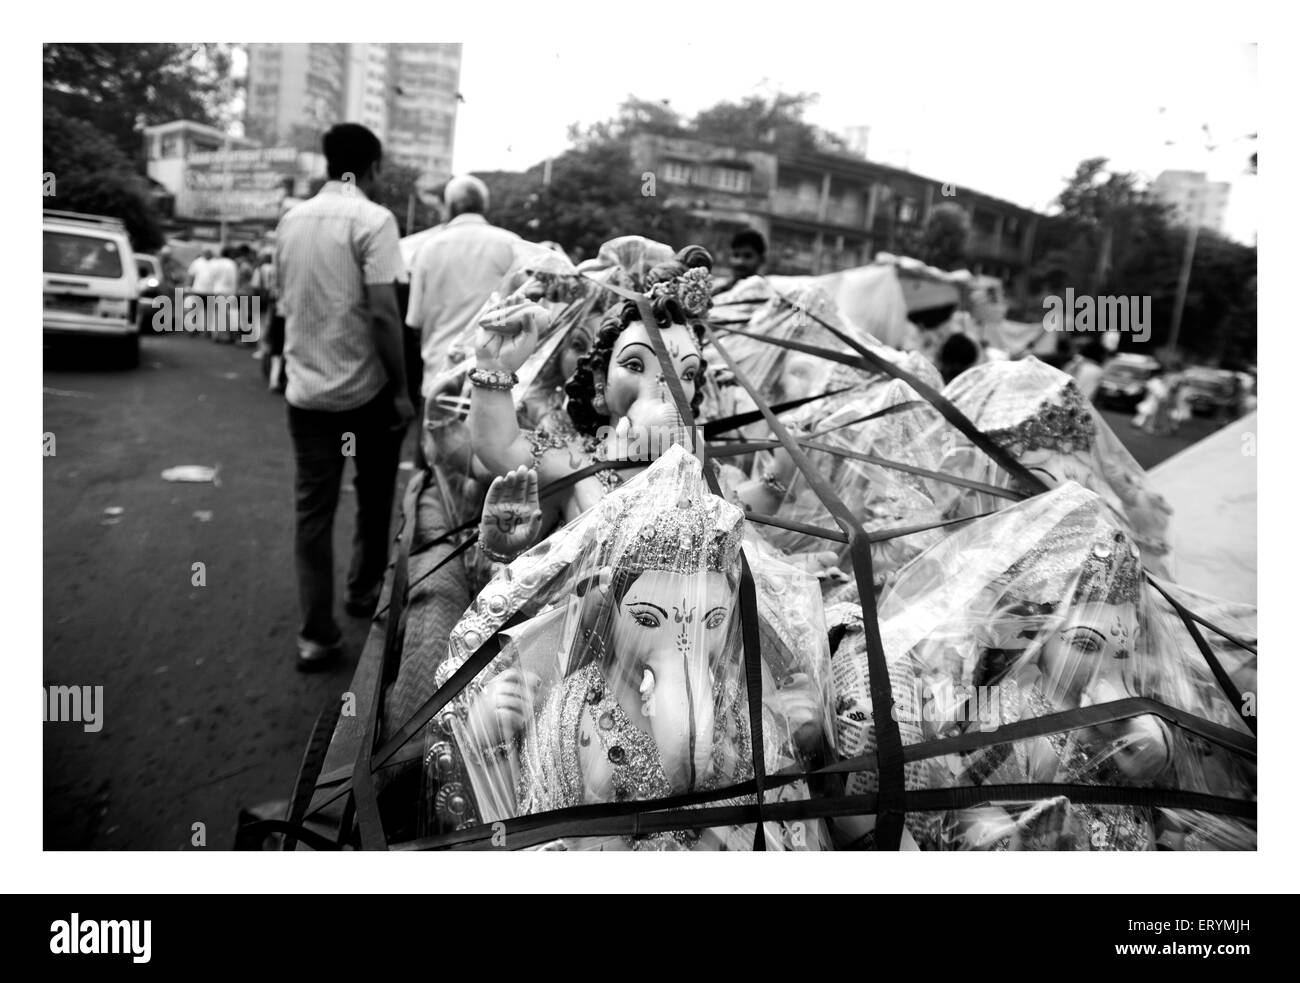 Market of lord ganesha at dadar west Mumbai Maharashtra India Asia Stock Photo